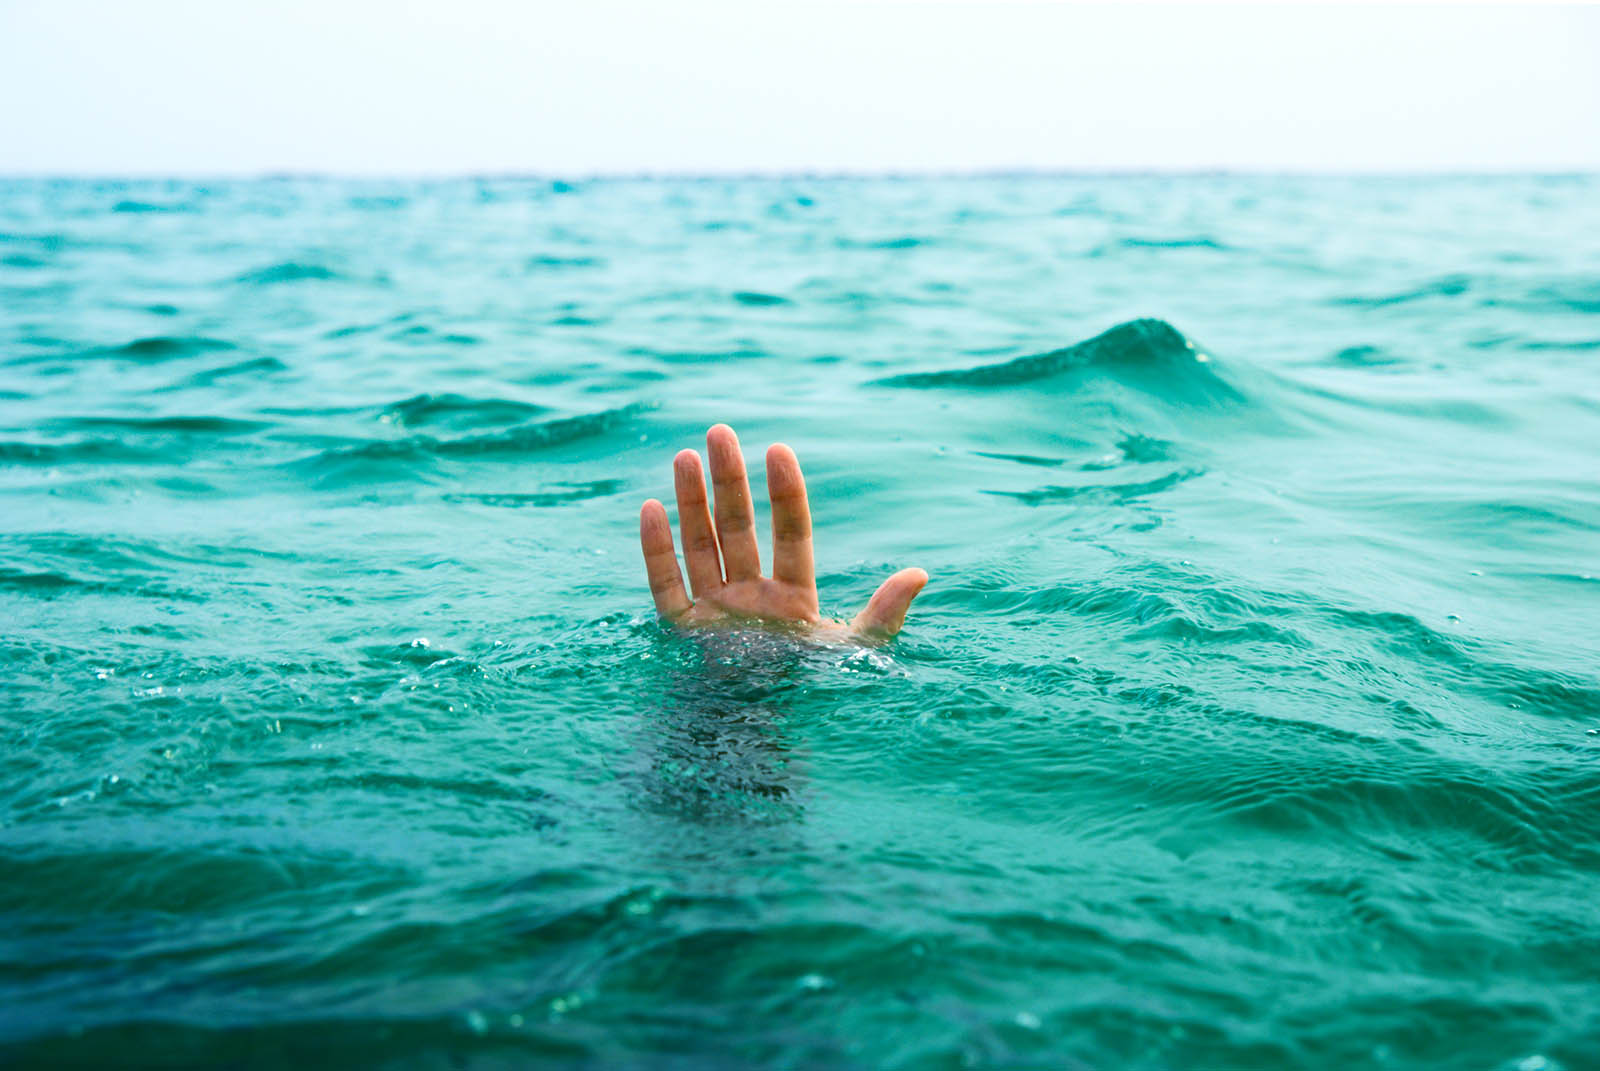 کودک ۵ساله در کانال آب حصه اصفهان غرق شد